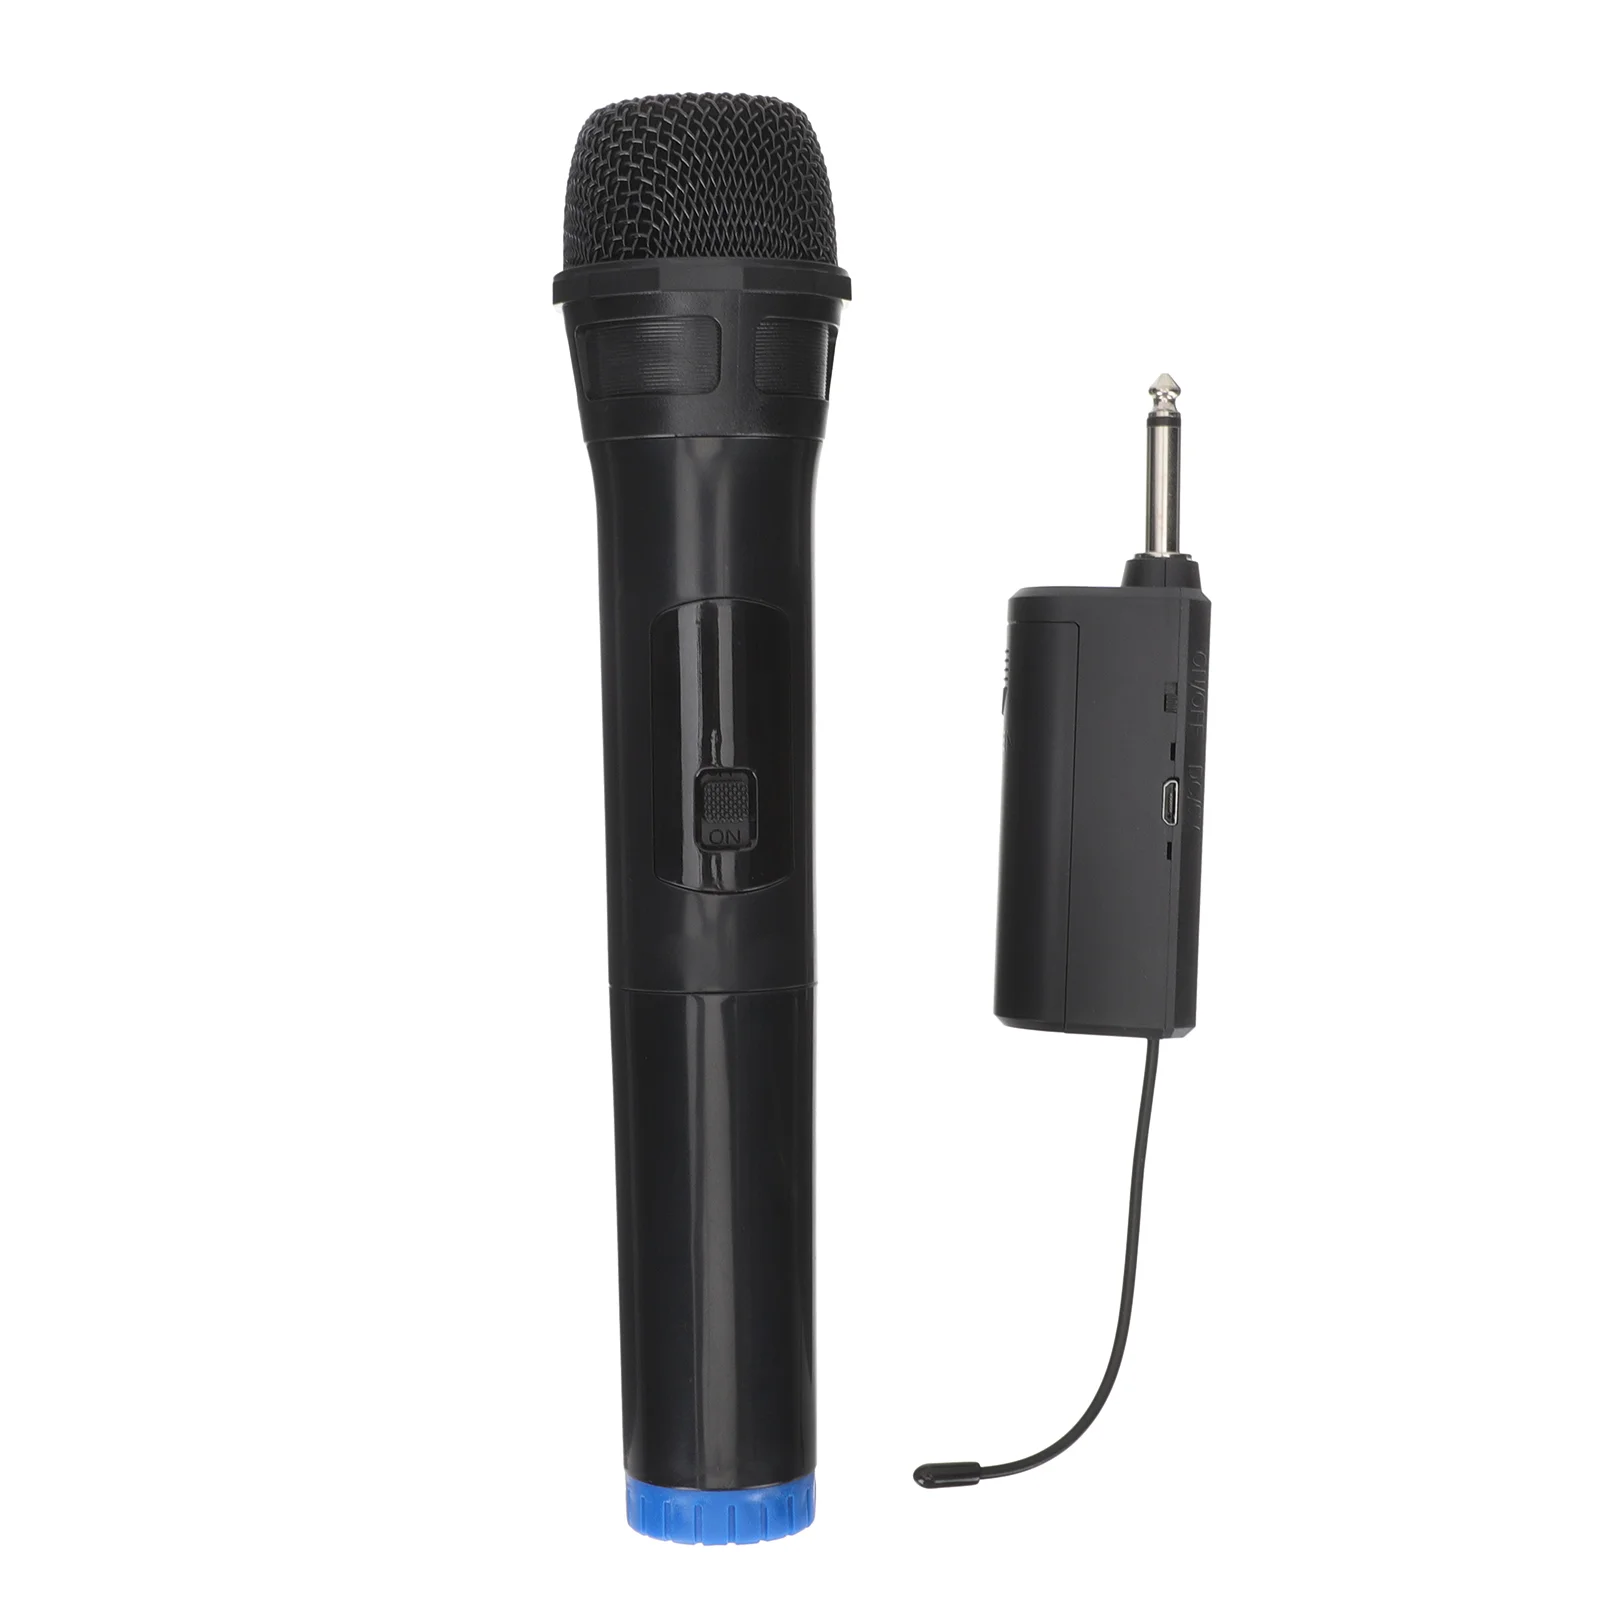 

Microphone Mic Handheld Wireless Cordless Karaoke Microfonos Para Inalambricos Singing Phone Ktv Party Dynamic Microphones Metal